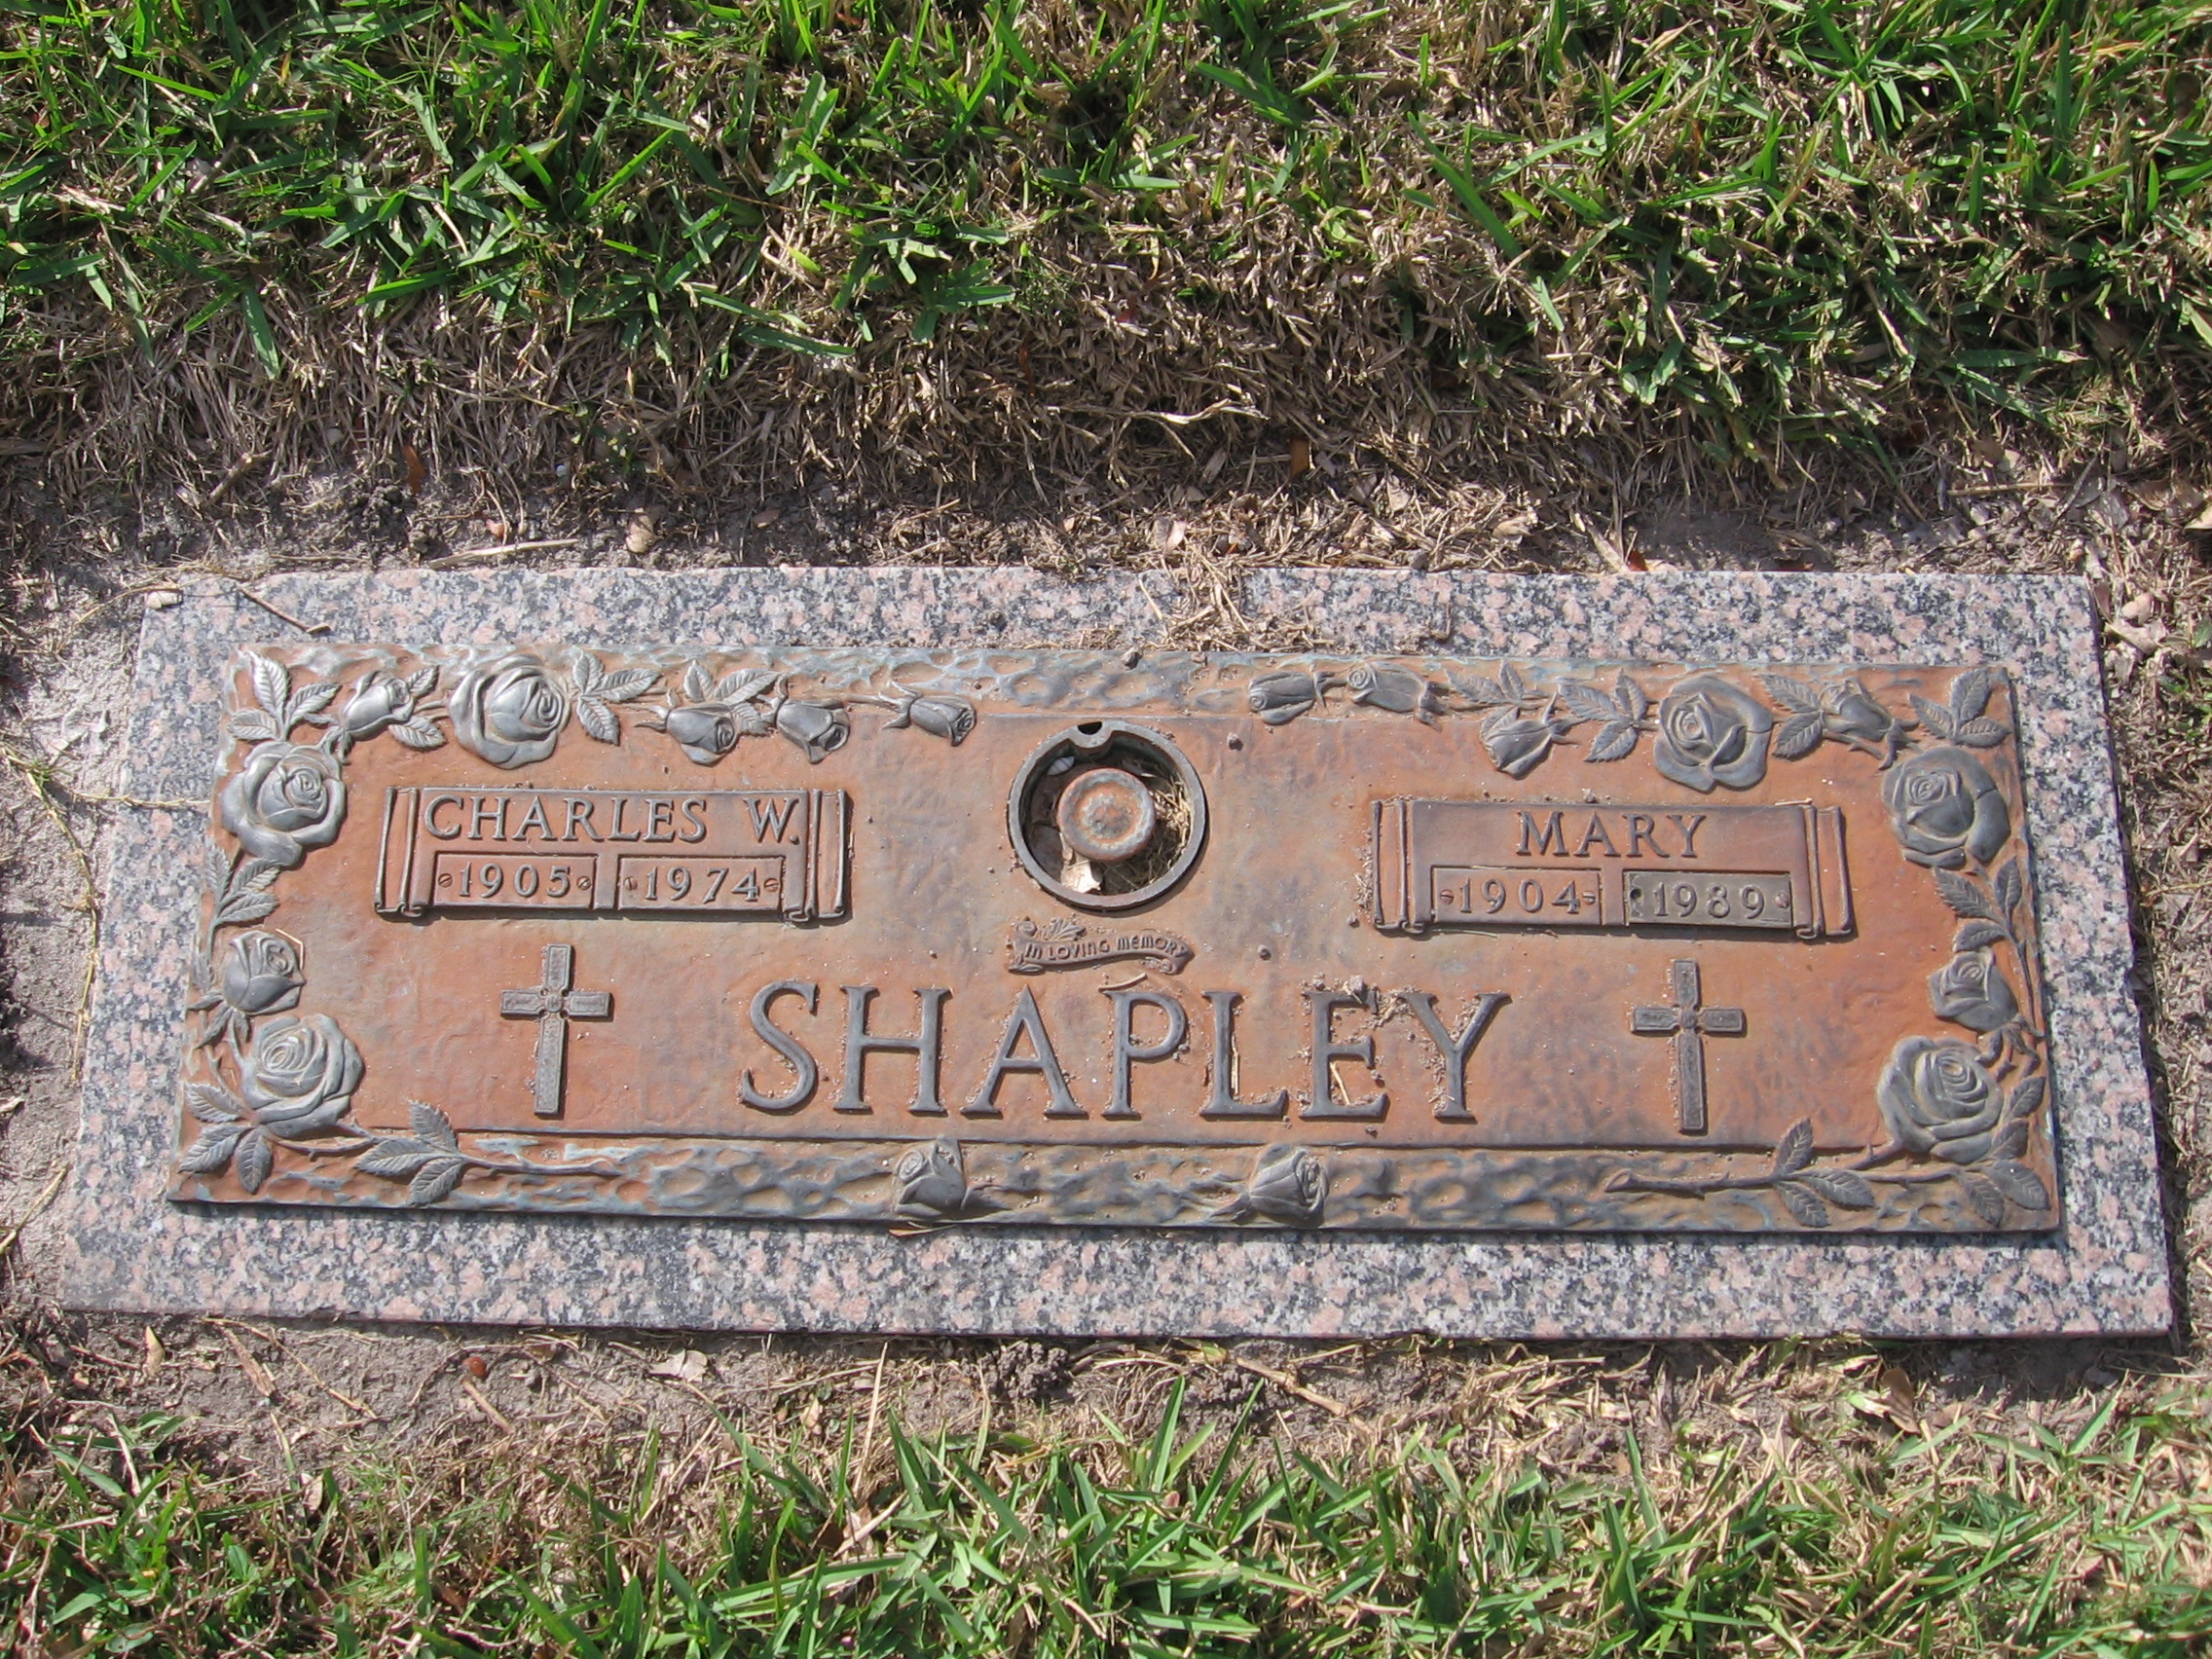 Charles W Shapley